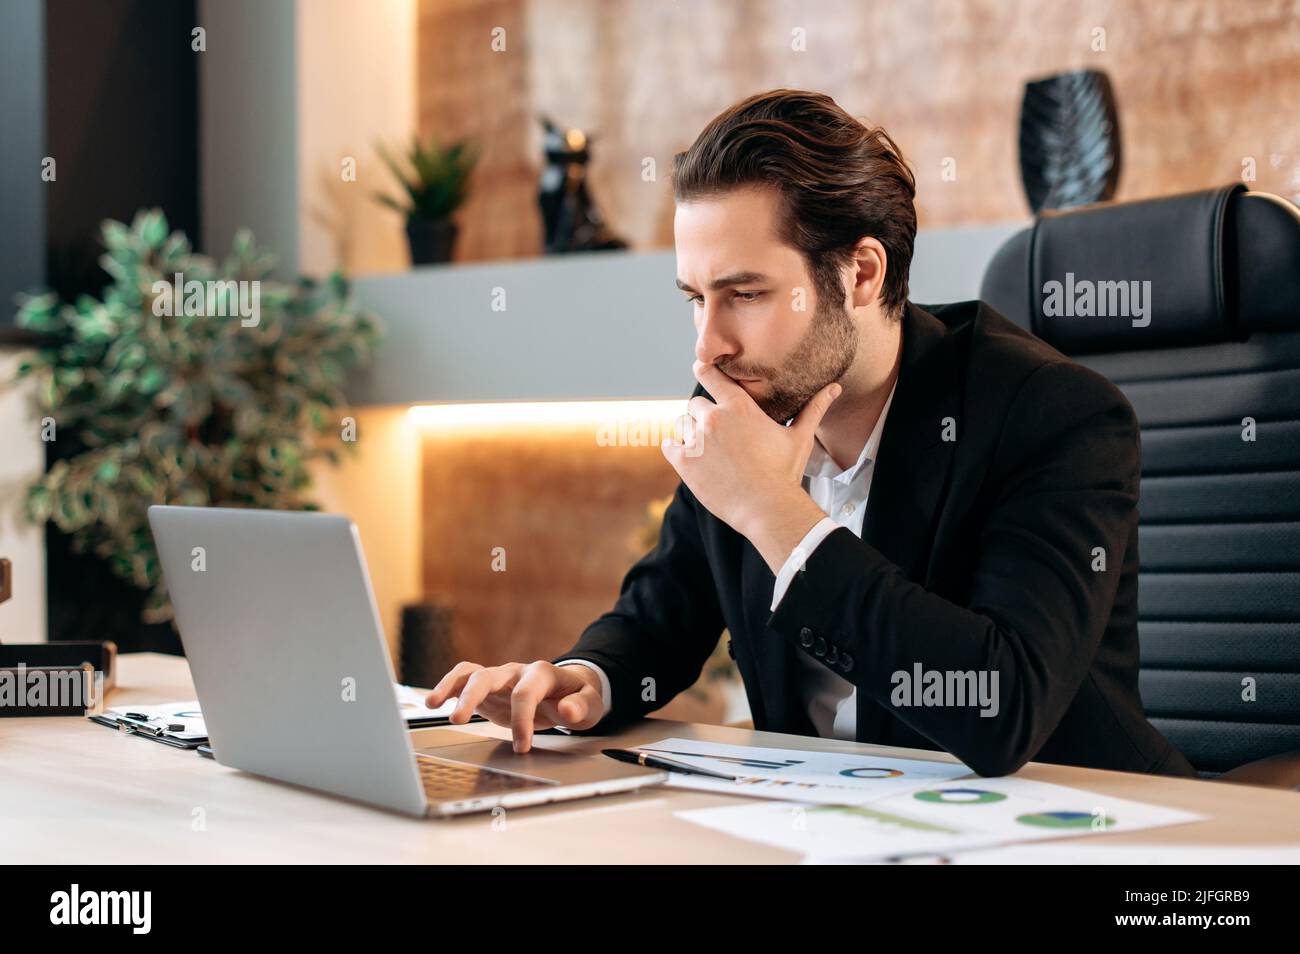 Un uomo d'affari caucasico, un manager, un leader aziendale, si siede sul posto di lavoro in ufficio, guarda con attenzione allo schermo del laptop, lavora su un piano aziendale per un nuovo progetto Foto Stock